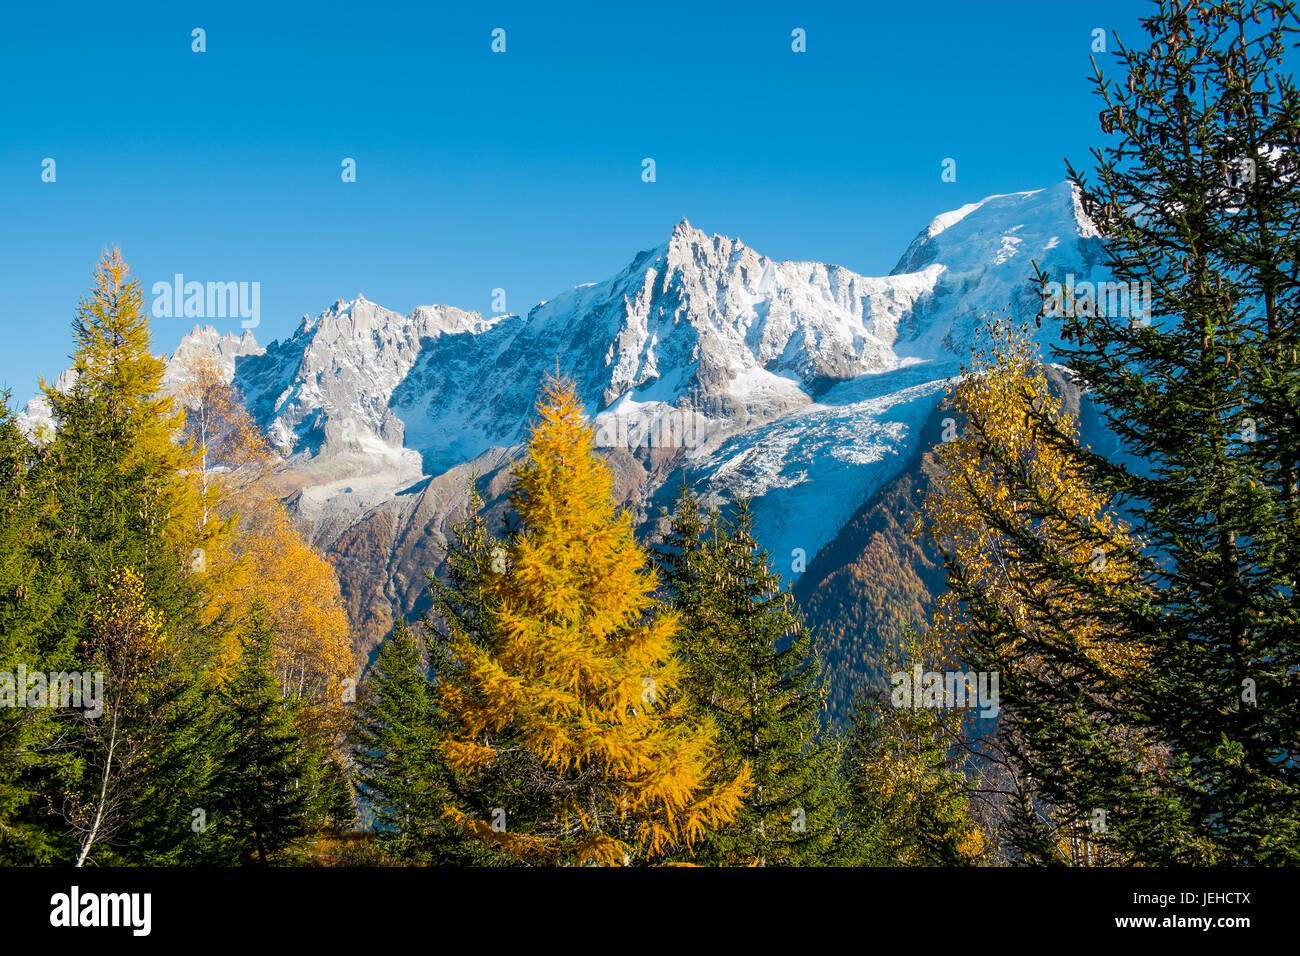 Blick auf Mont Blanc von einem Pinienwald im Herbst, Chamonix, Frankreich Stockfoto